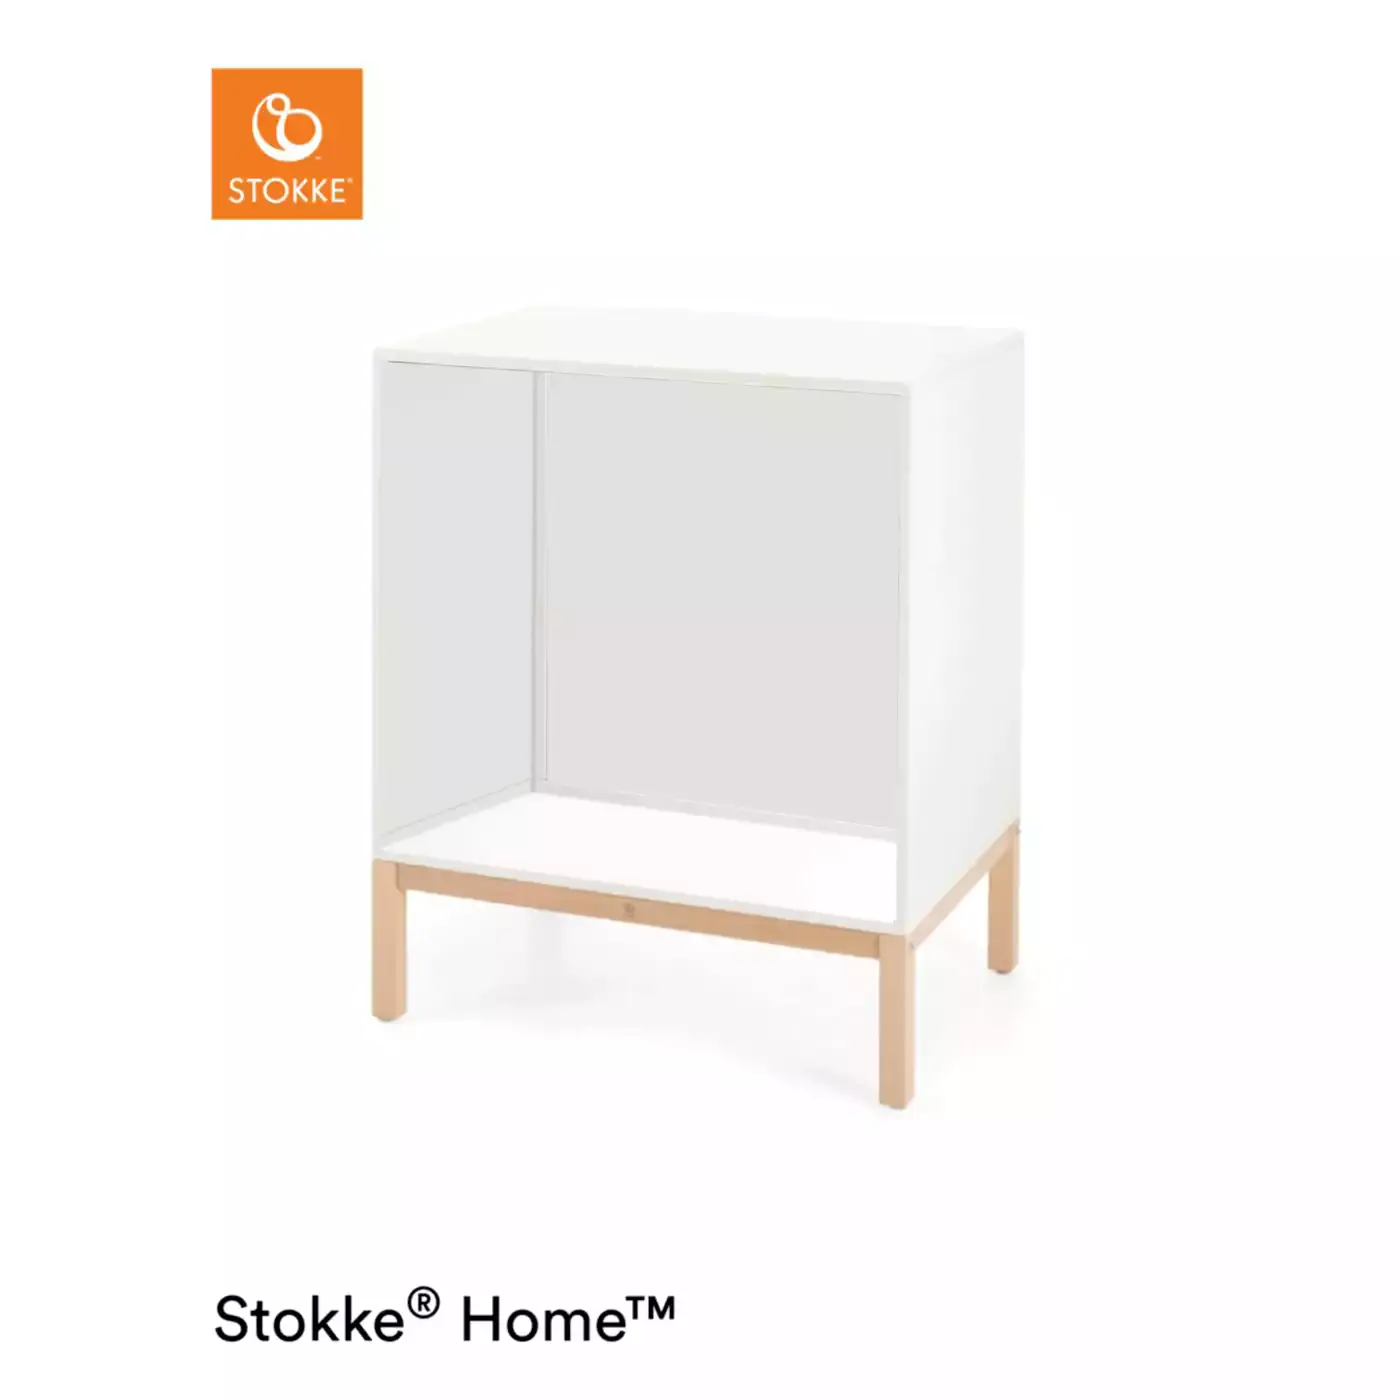 Home™ Dresser Natural Box 1 STOKKE 2000572130103 3